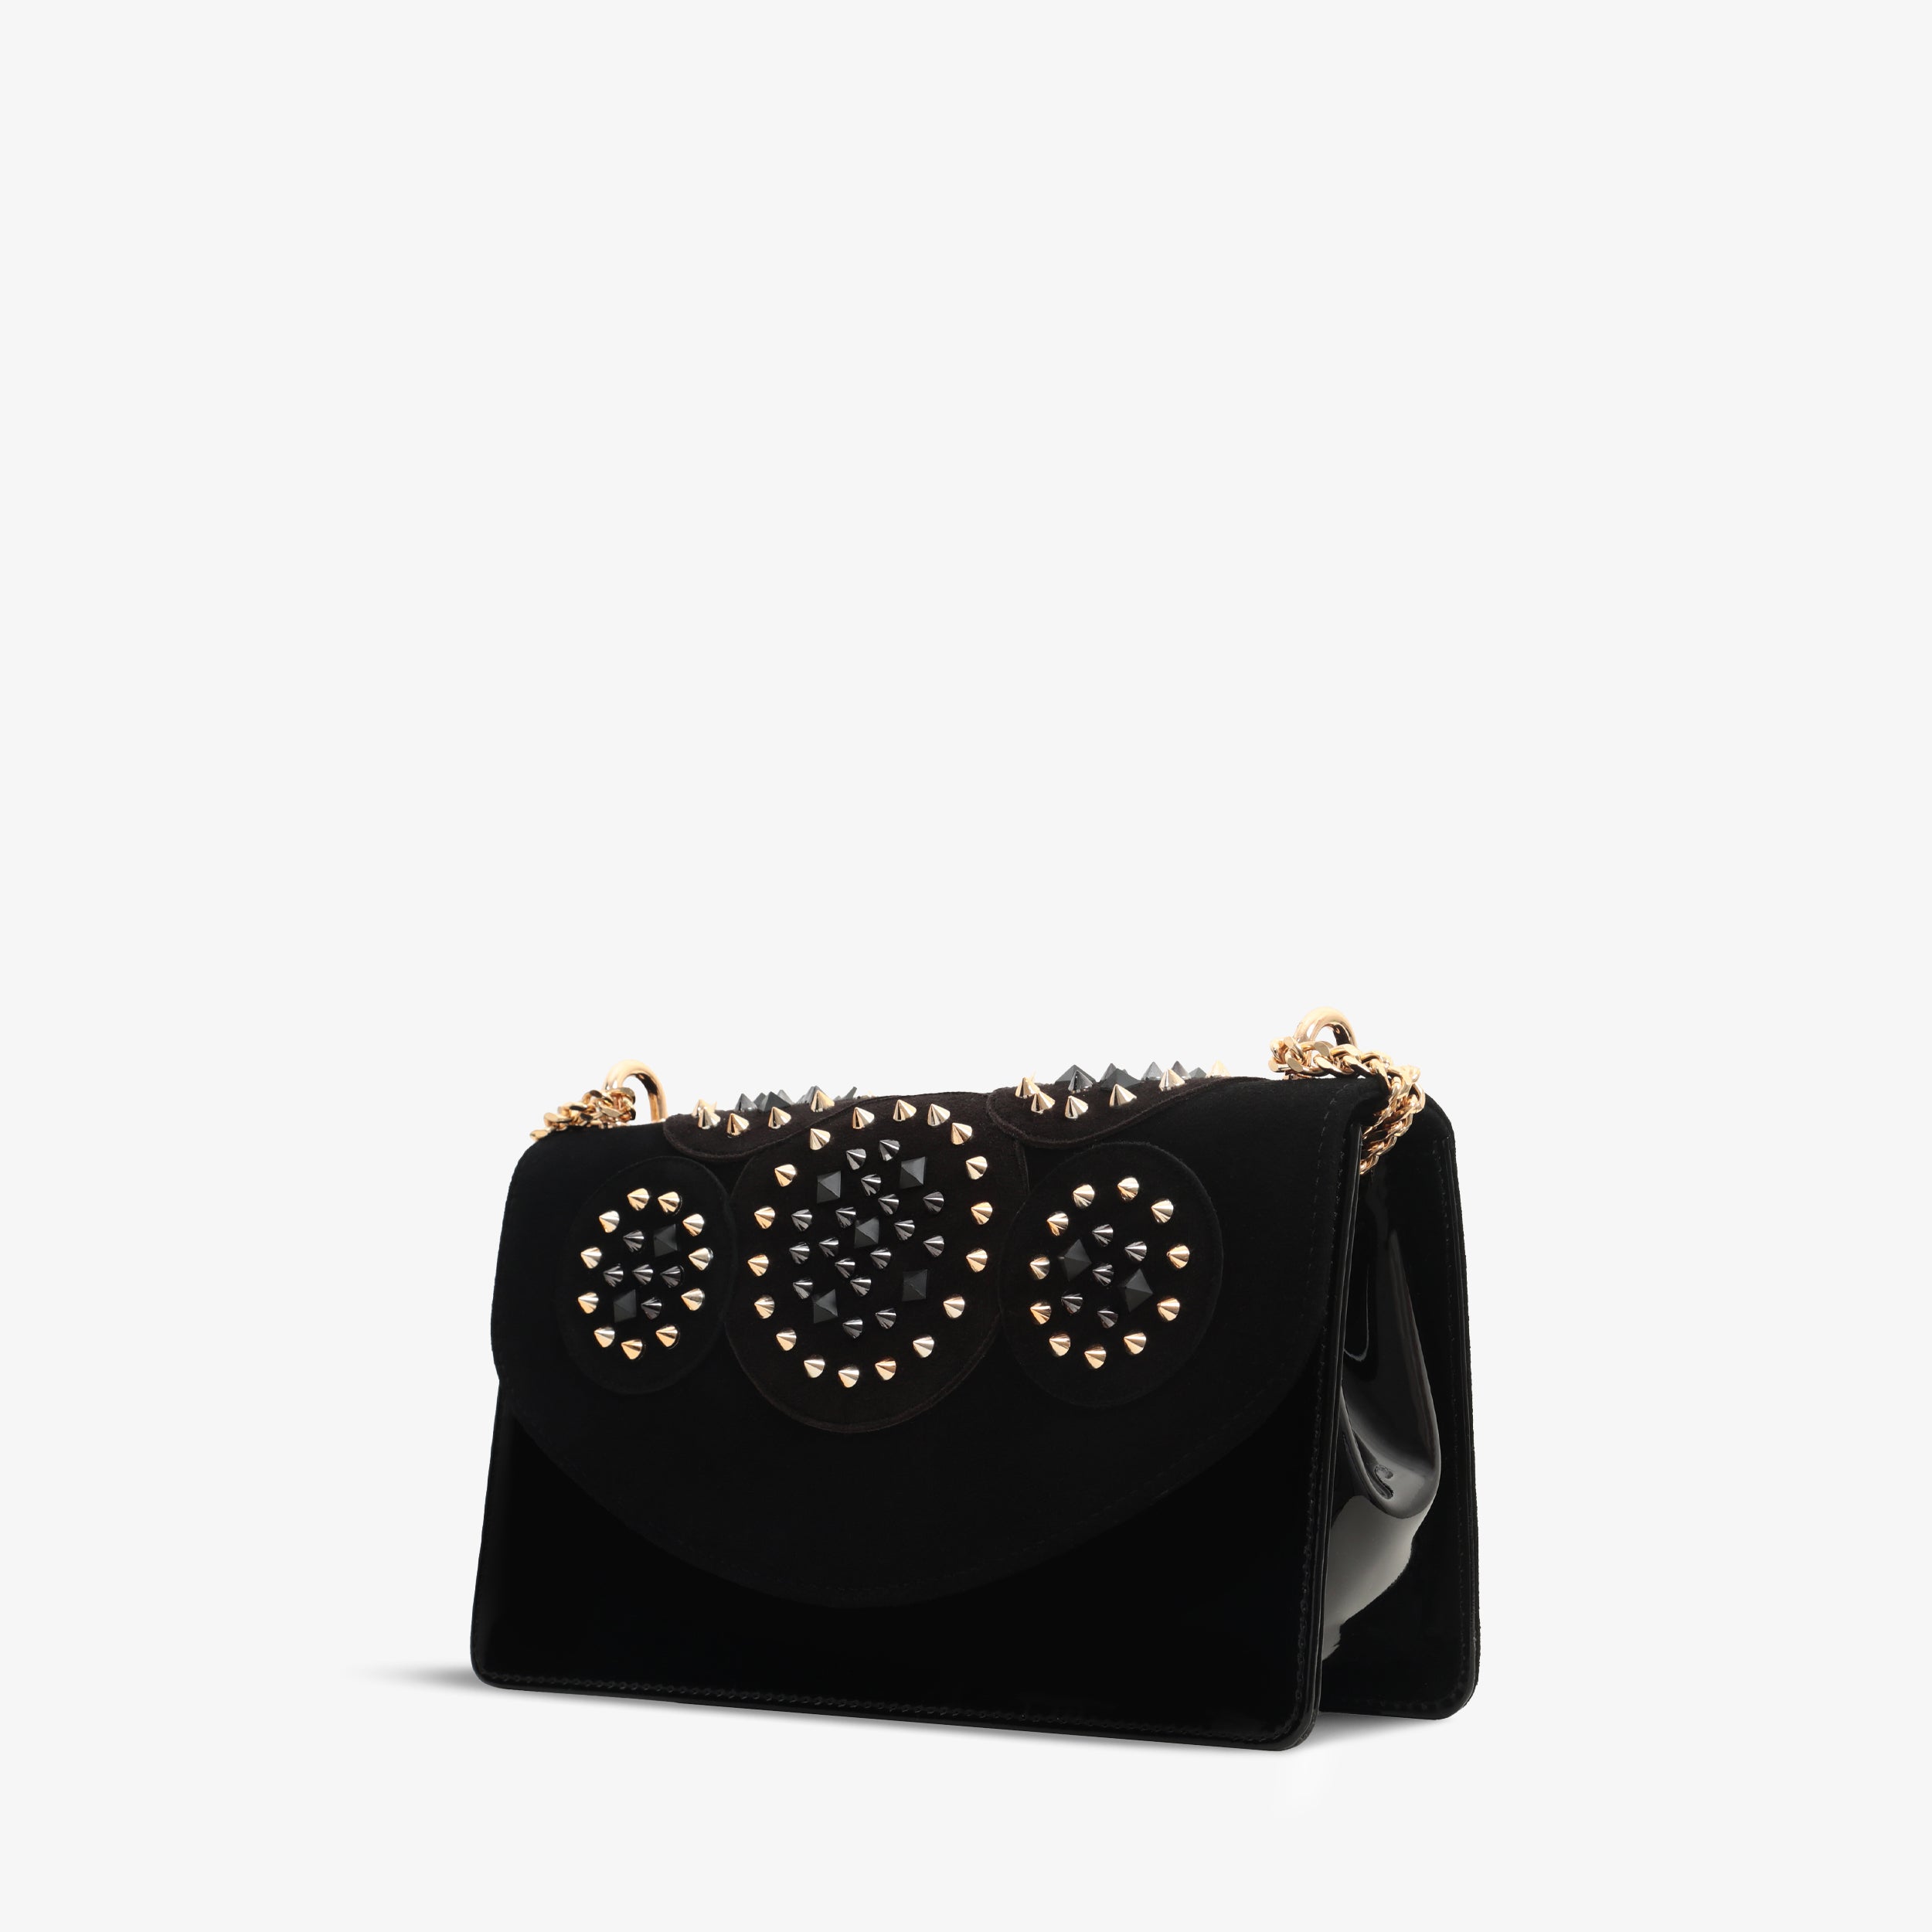 The Infanta Black Spike Leather Handbag